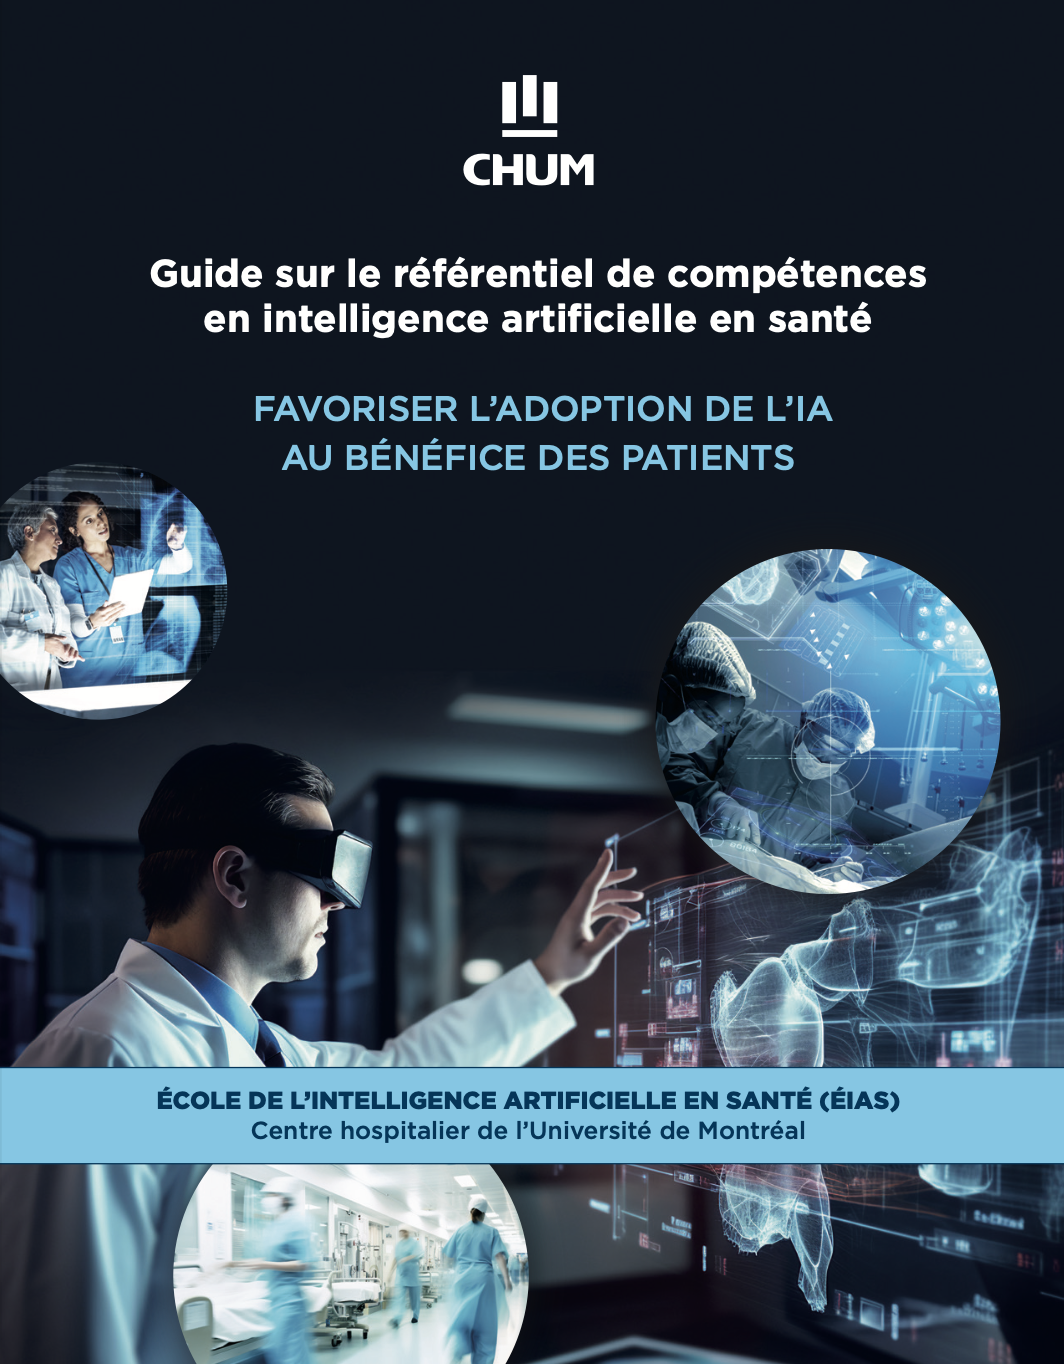 Guide sur le référentiel de compétences en IA en santé